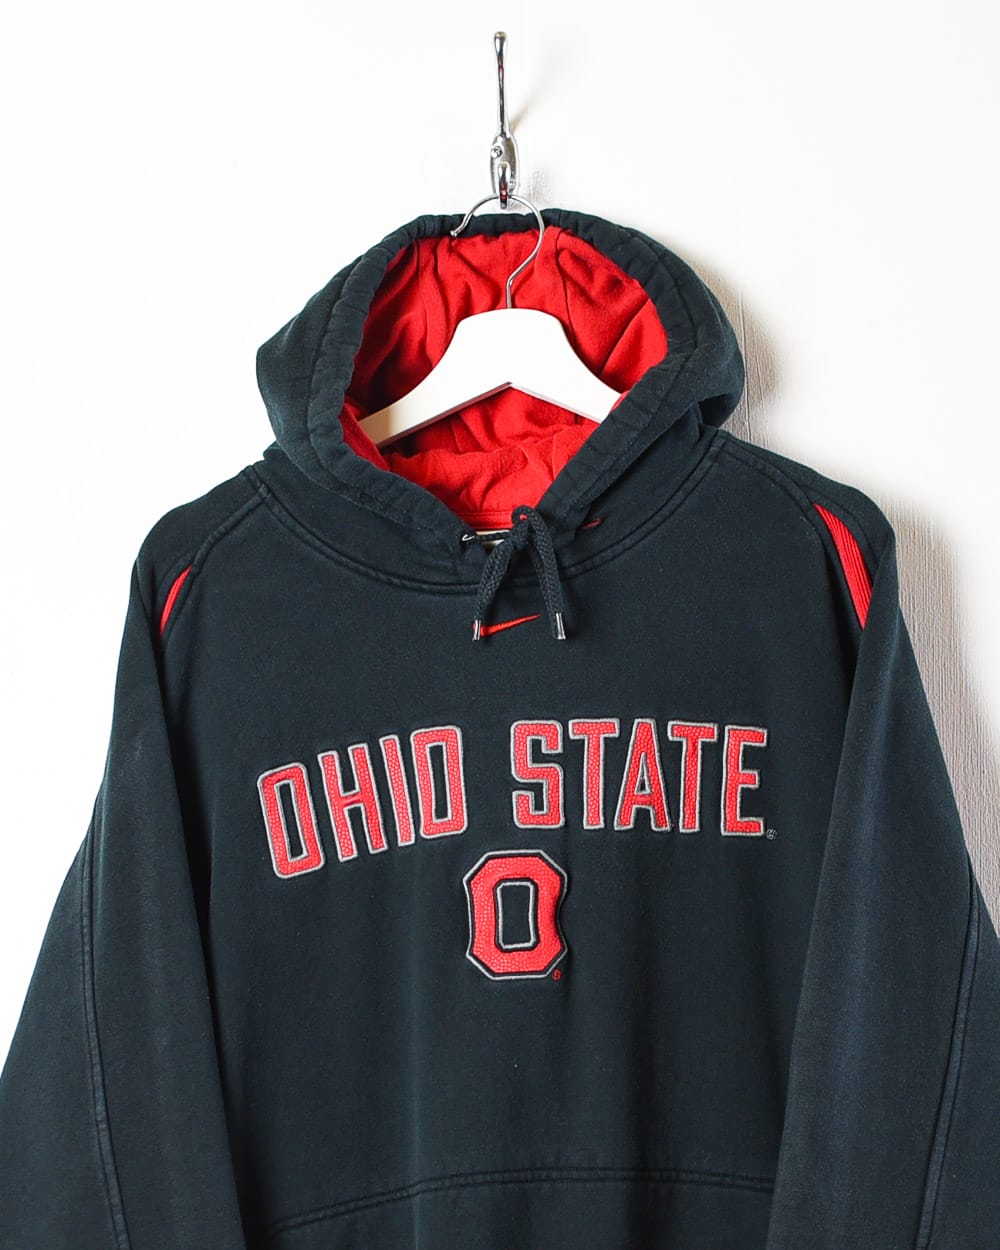 Black Nike Team Ohio State Hoodie - Medium